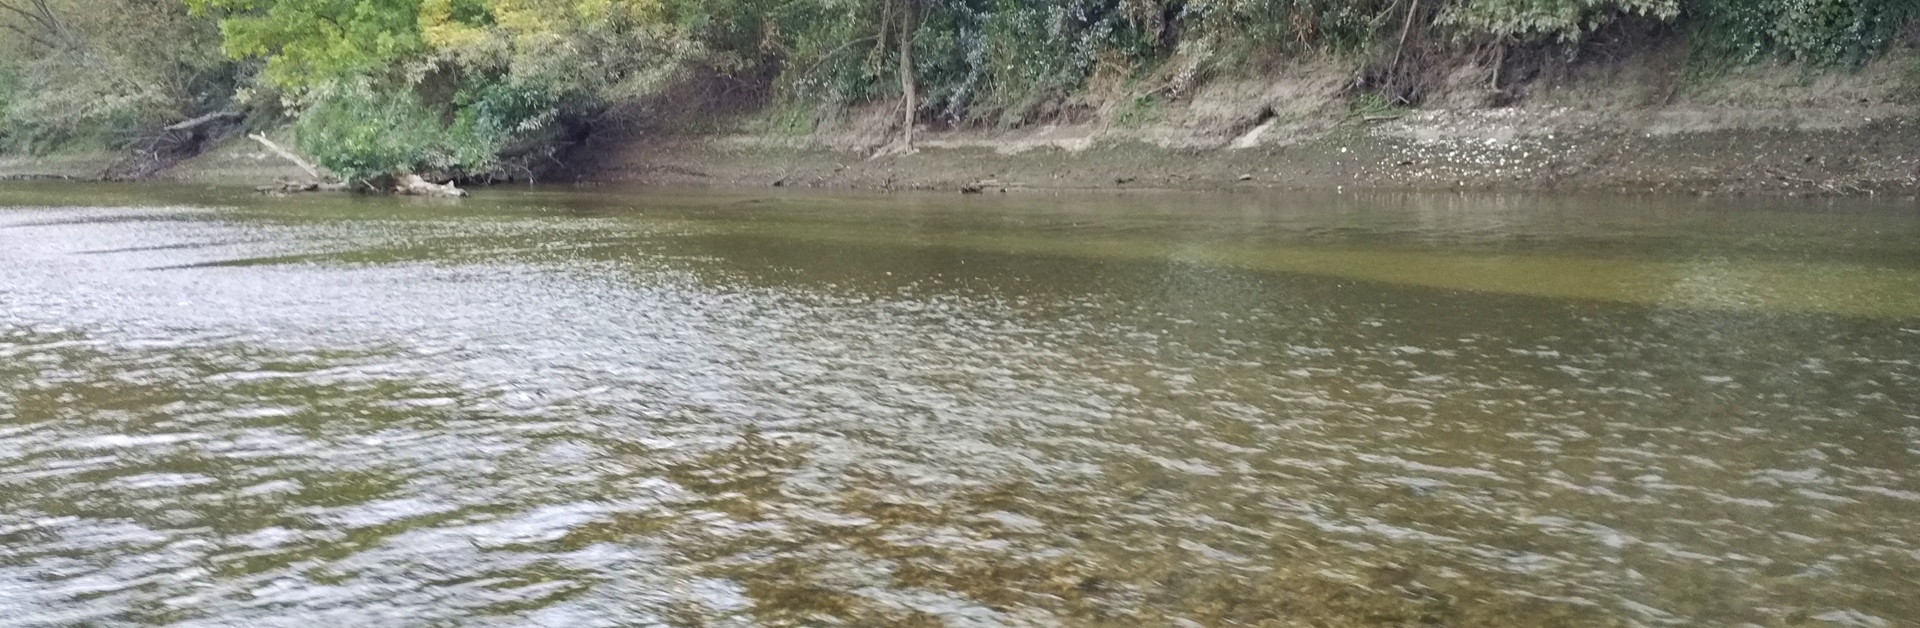 Rieka Morava - nízky stav vody